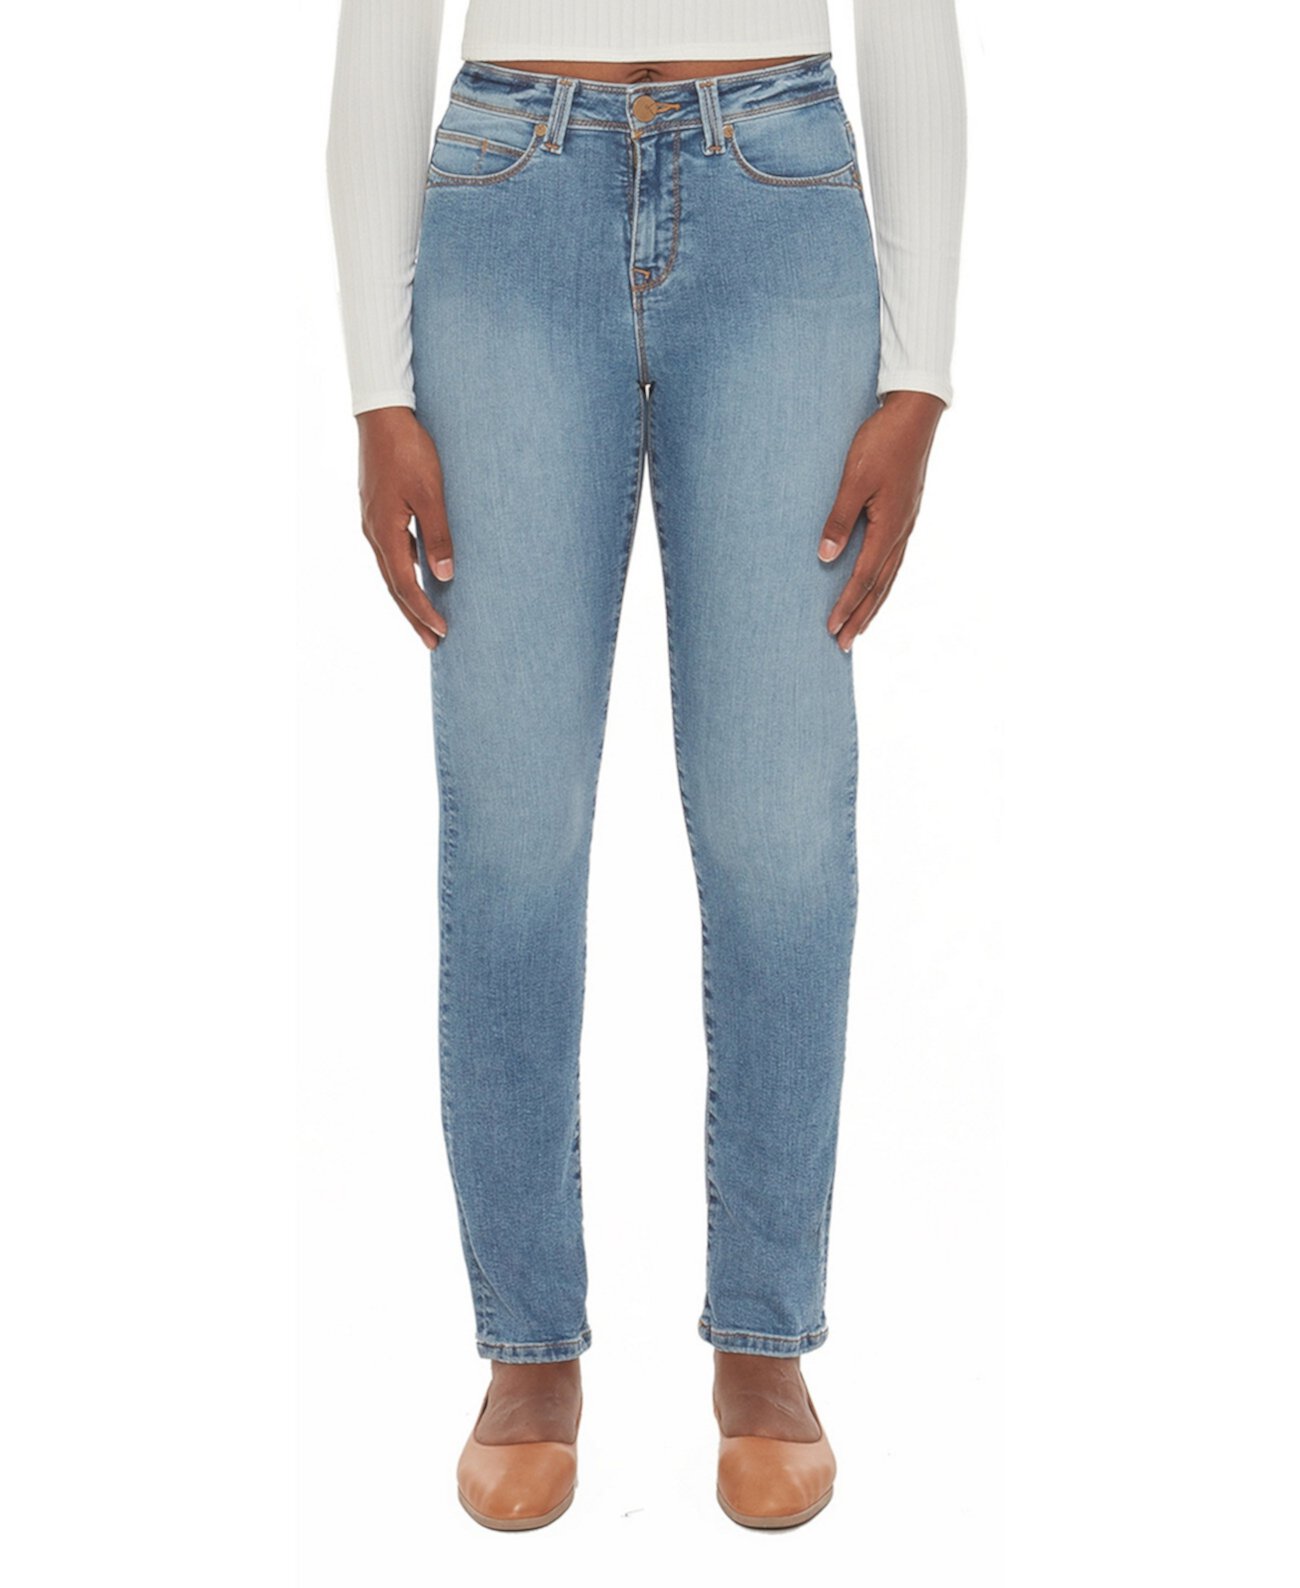 Женские прямые джинсы с высокой посадкой Lola Jeans